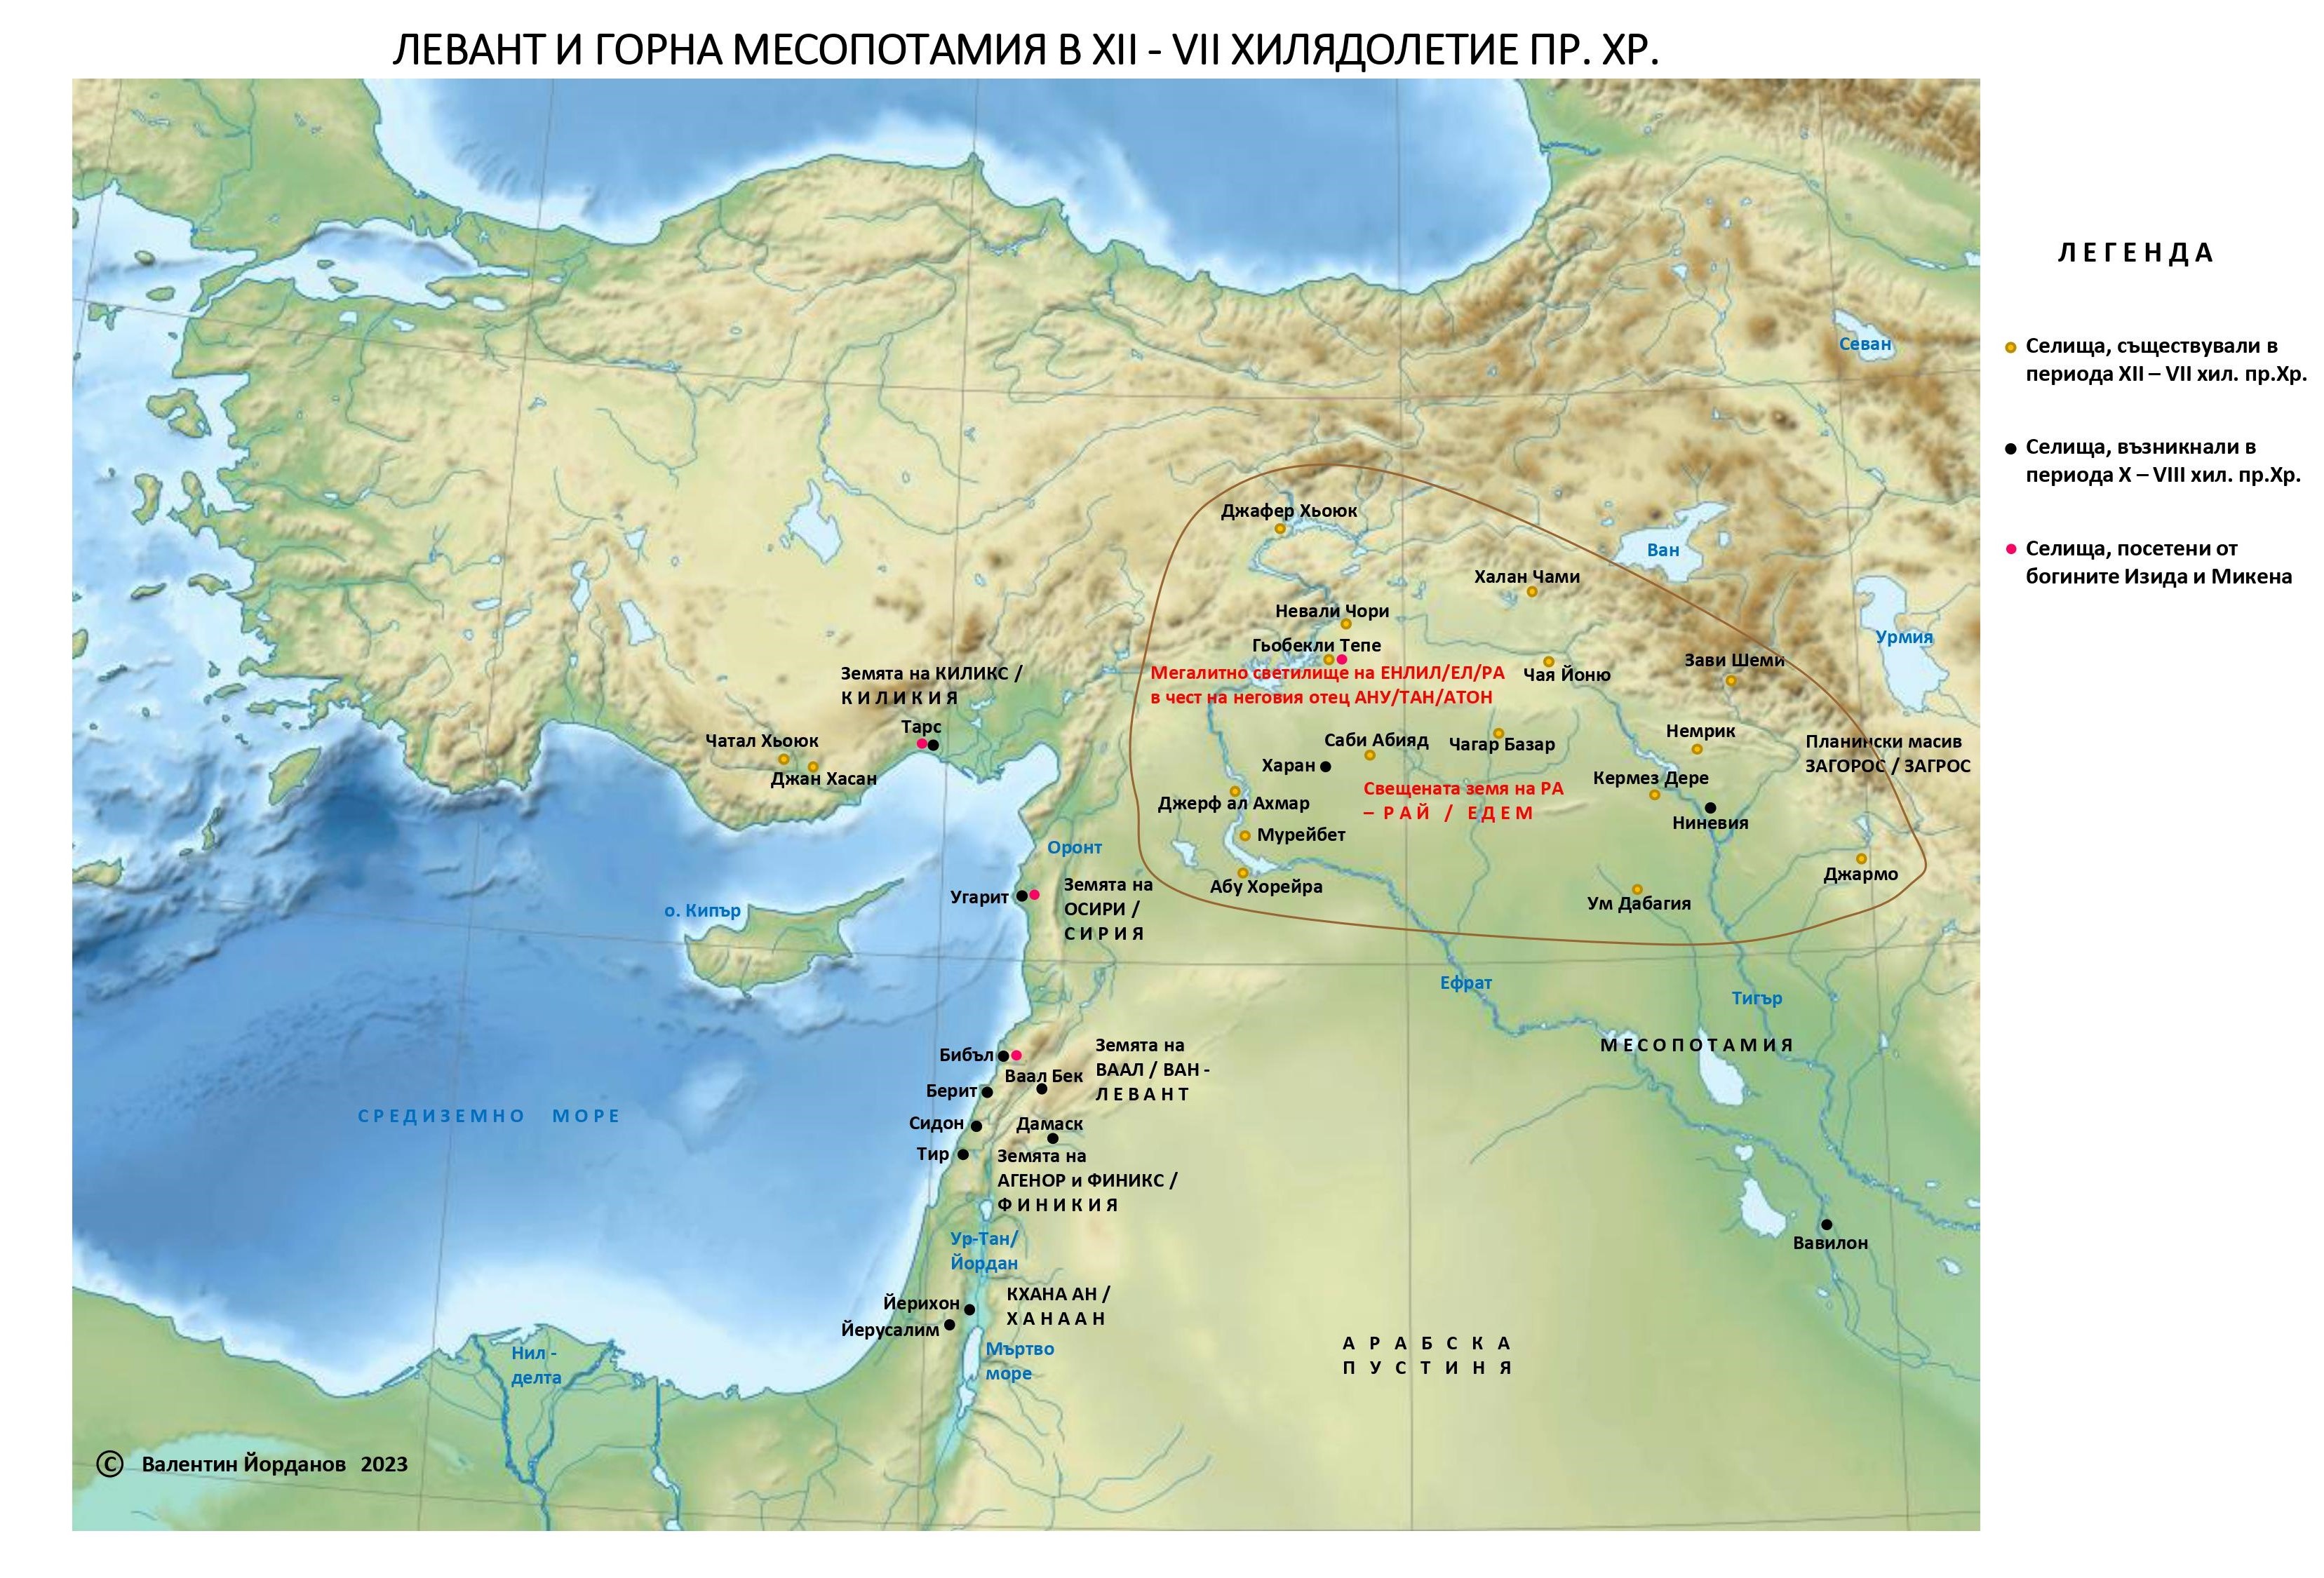 LEVANT I GORNA MESOPOTAMIA v IX VII hil. pr.Hr. s legenda